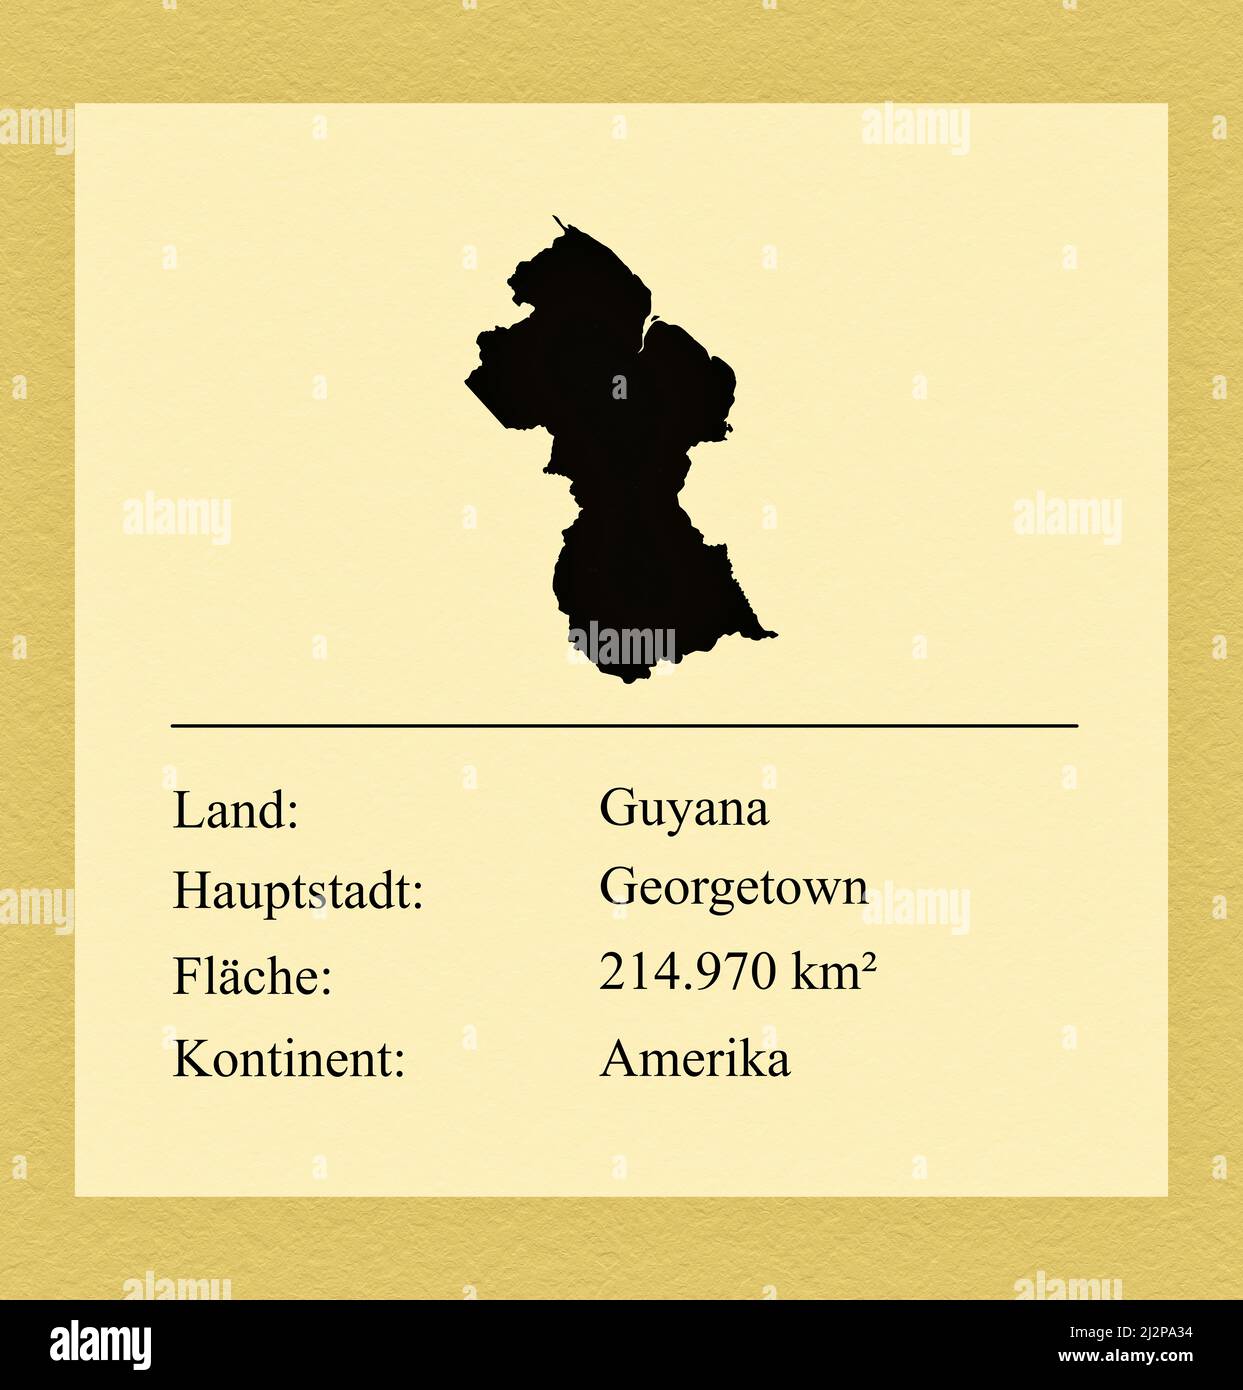 Umrisse des Landes Guyana, darunter ein kleiner Steckbrief mit Ländernamen, Hauptstadt, Fläche und Kontinent Foto Stock